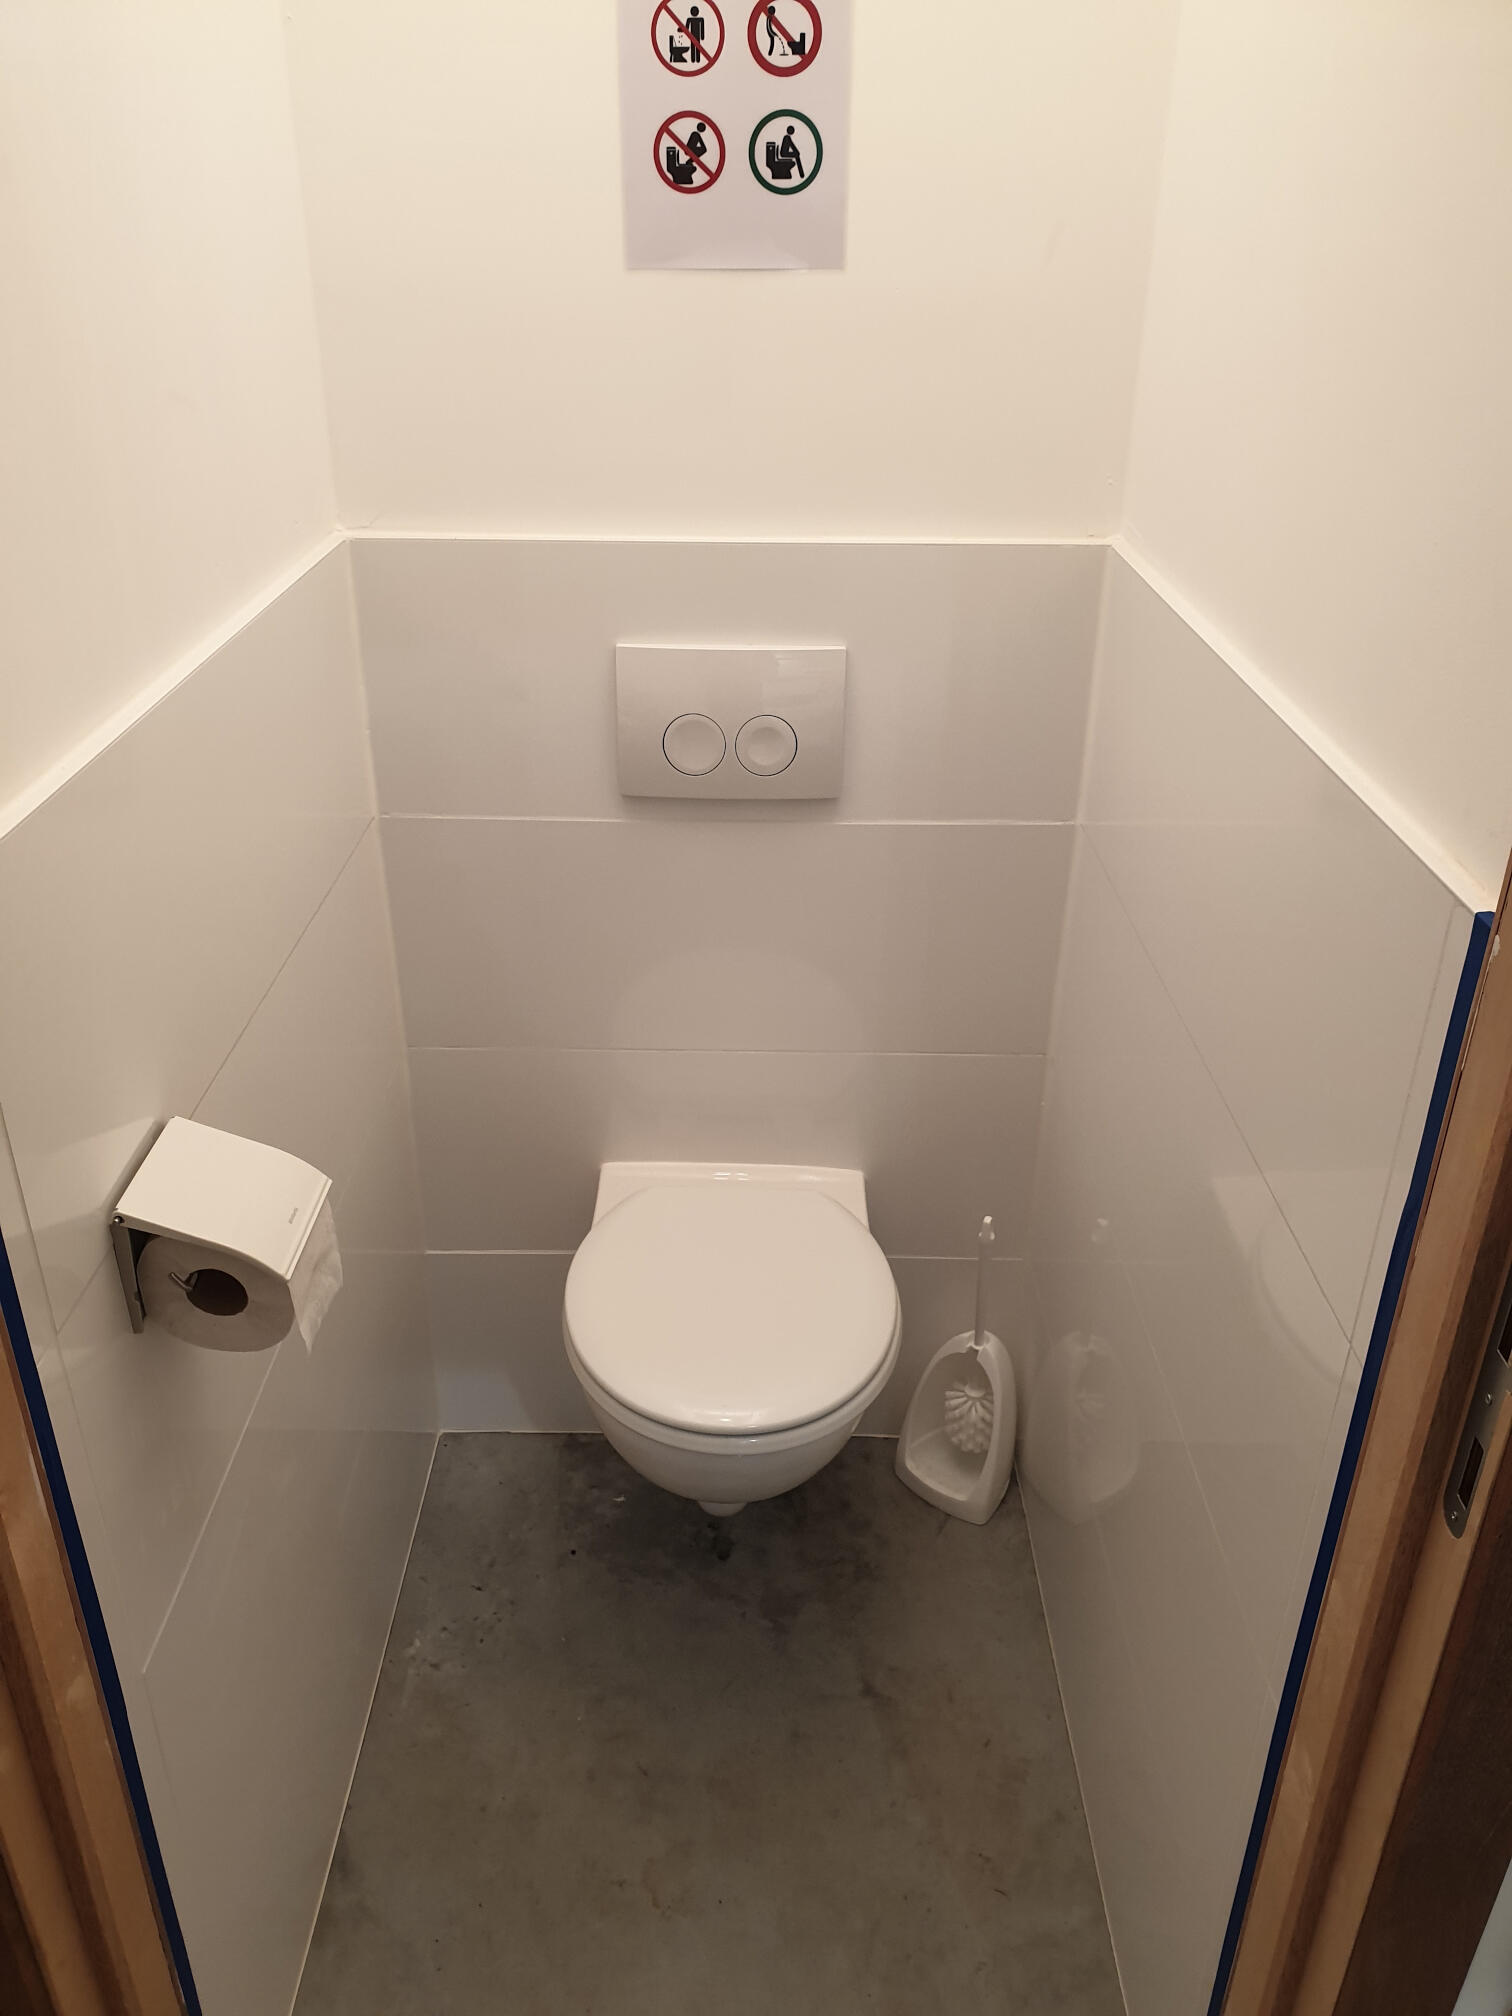 hangwc duwplaat bedieningsplaat toilet toilet wc betegeld toilet